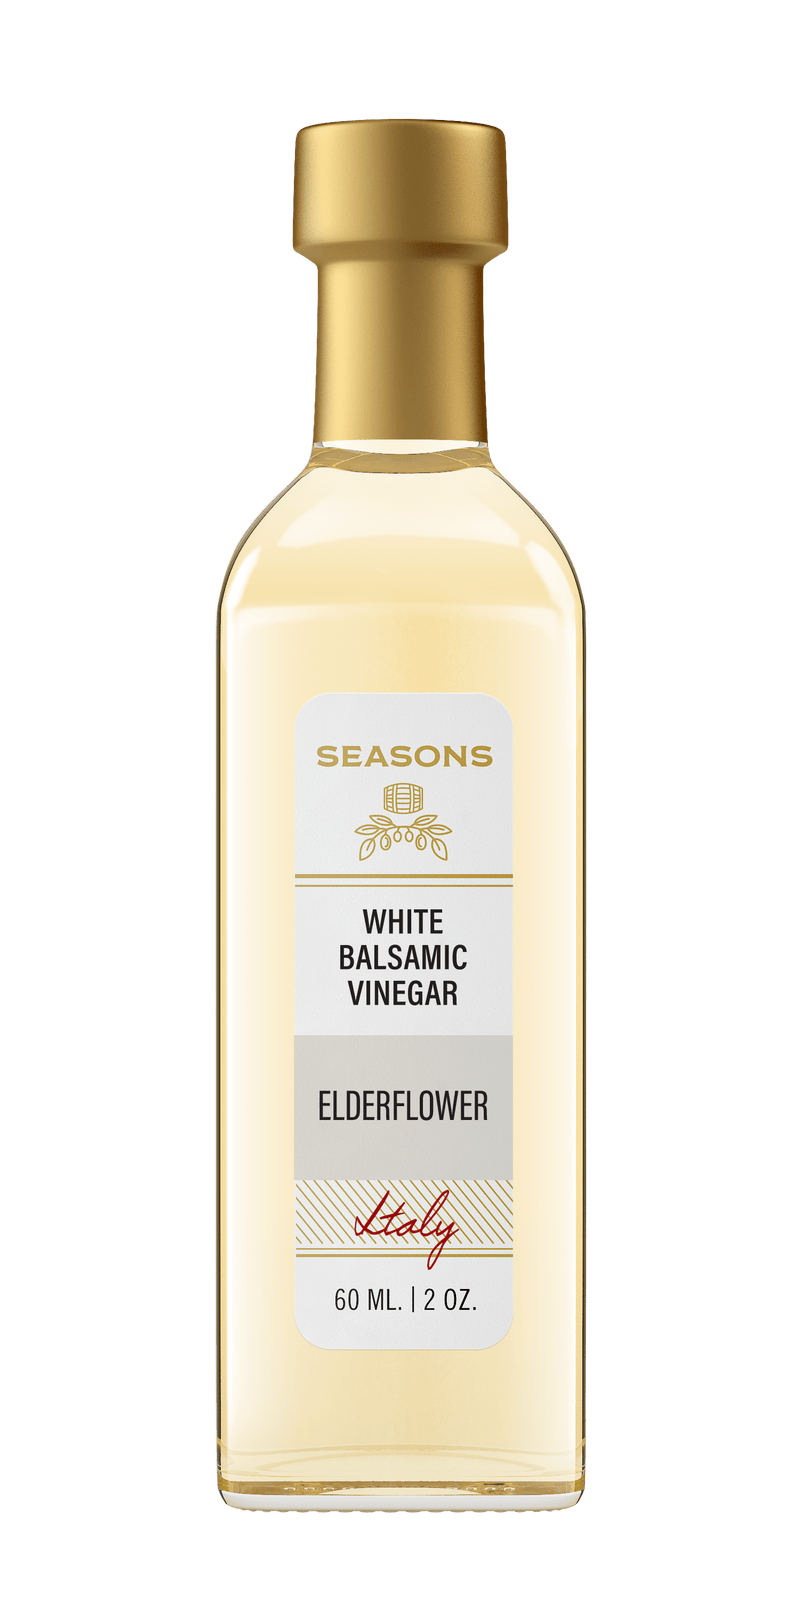 Millpress Imports White Balsamic 60mL Elderflower White Balsamic Vinegar